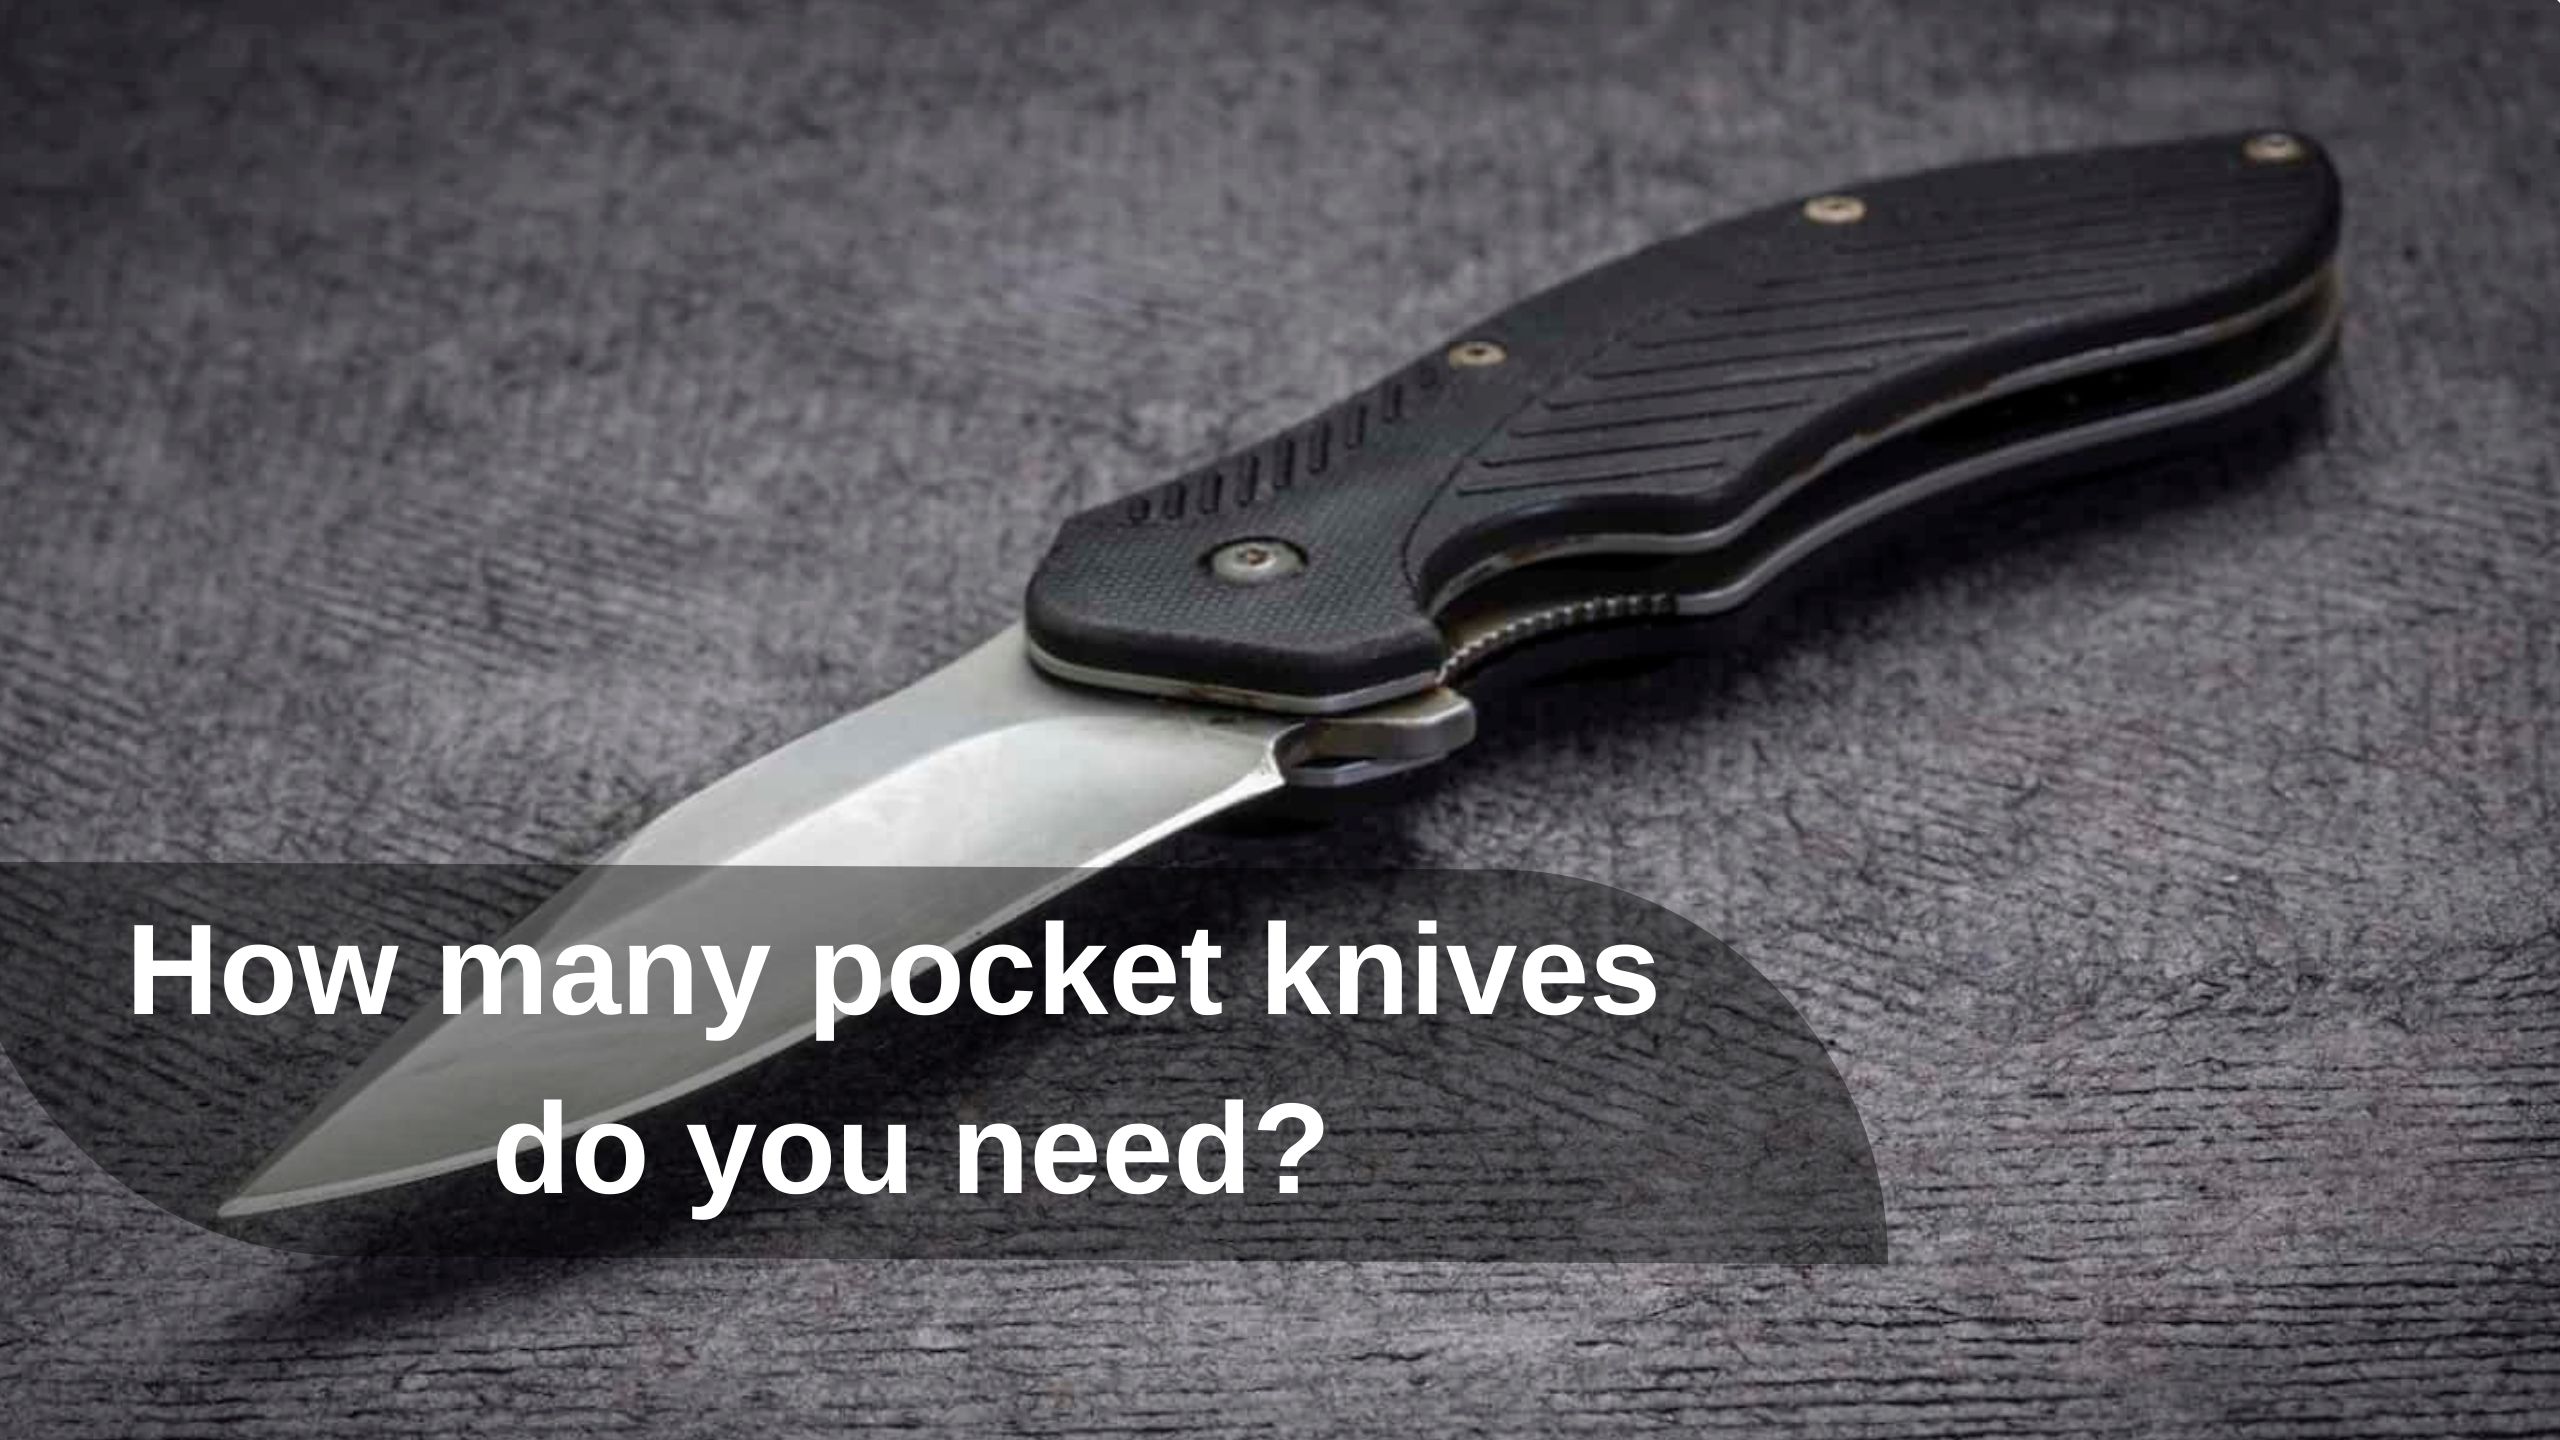 How many pocket knives do you need?